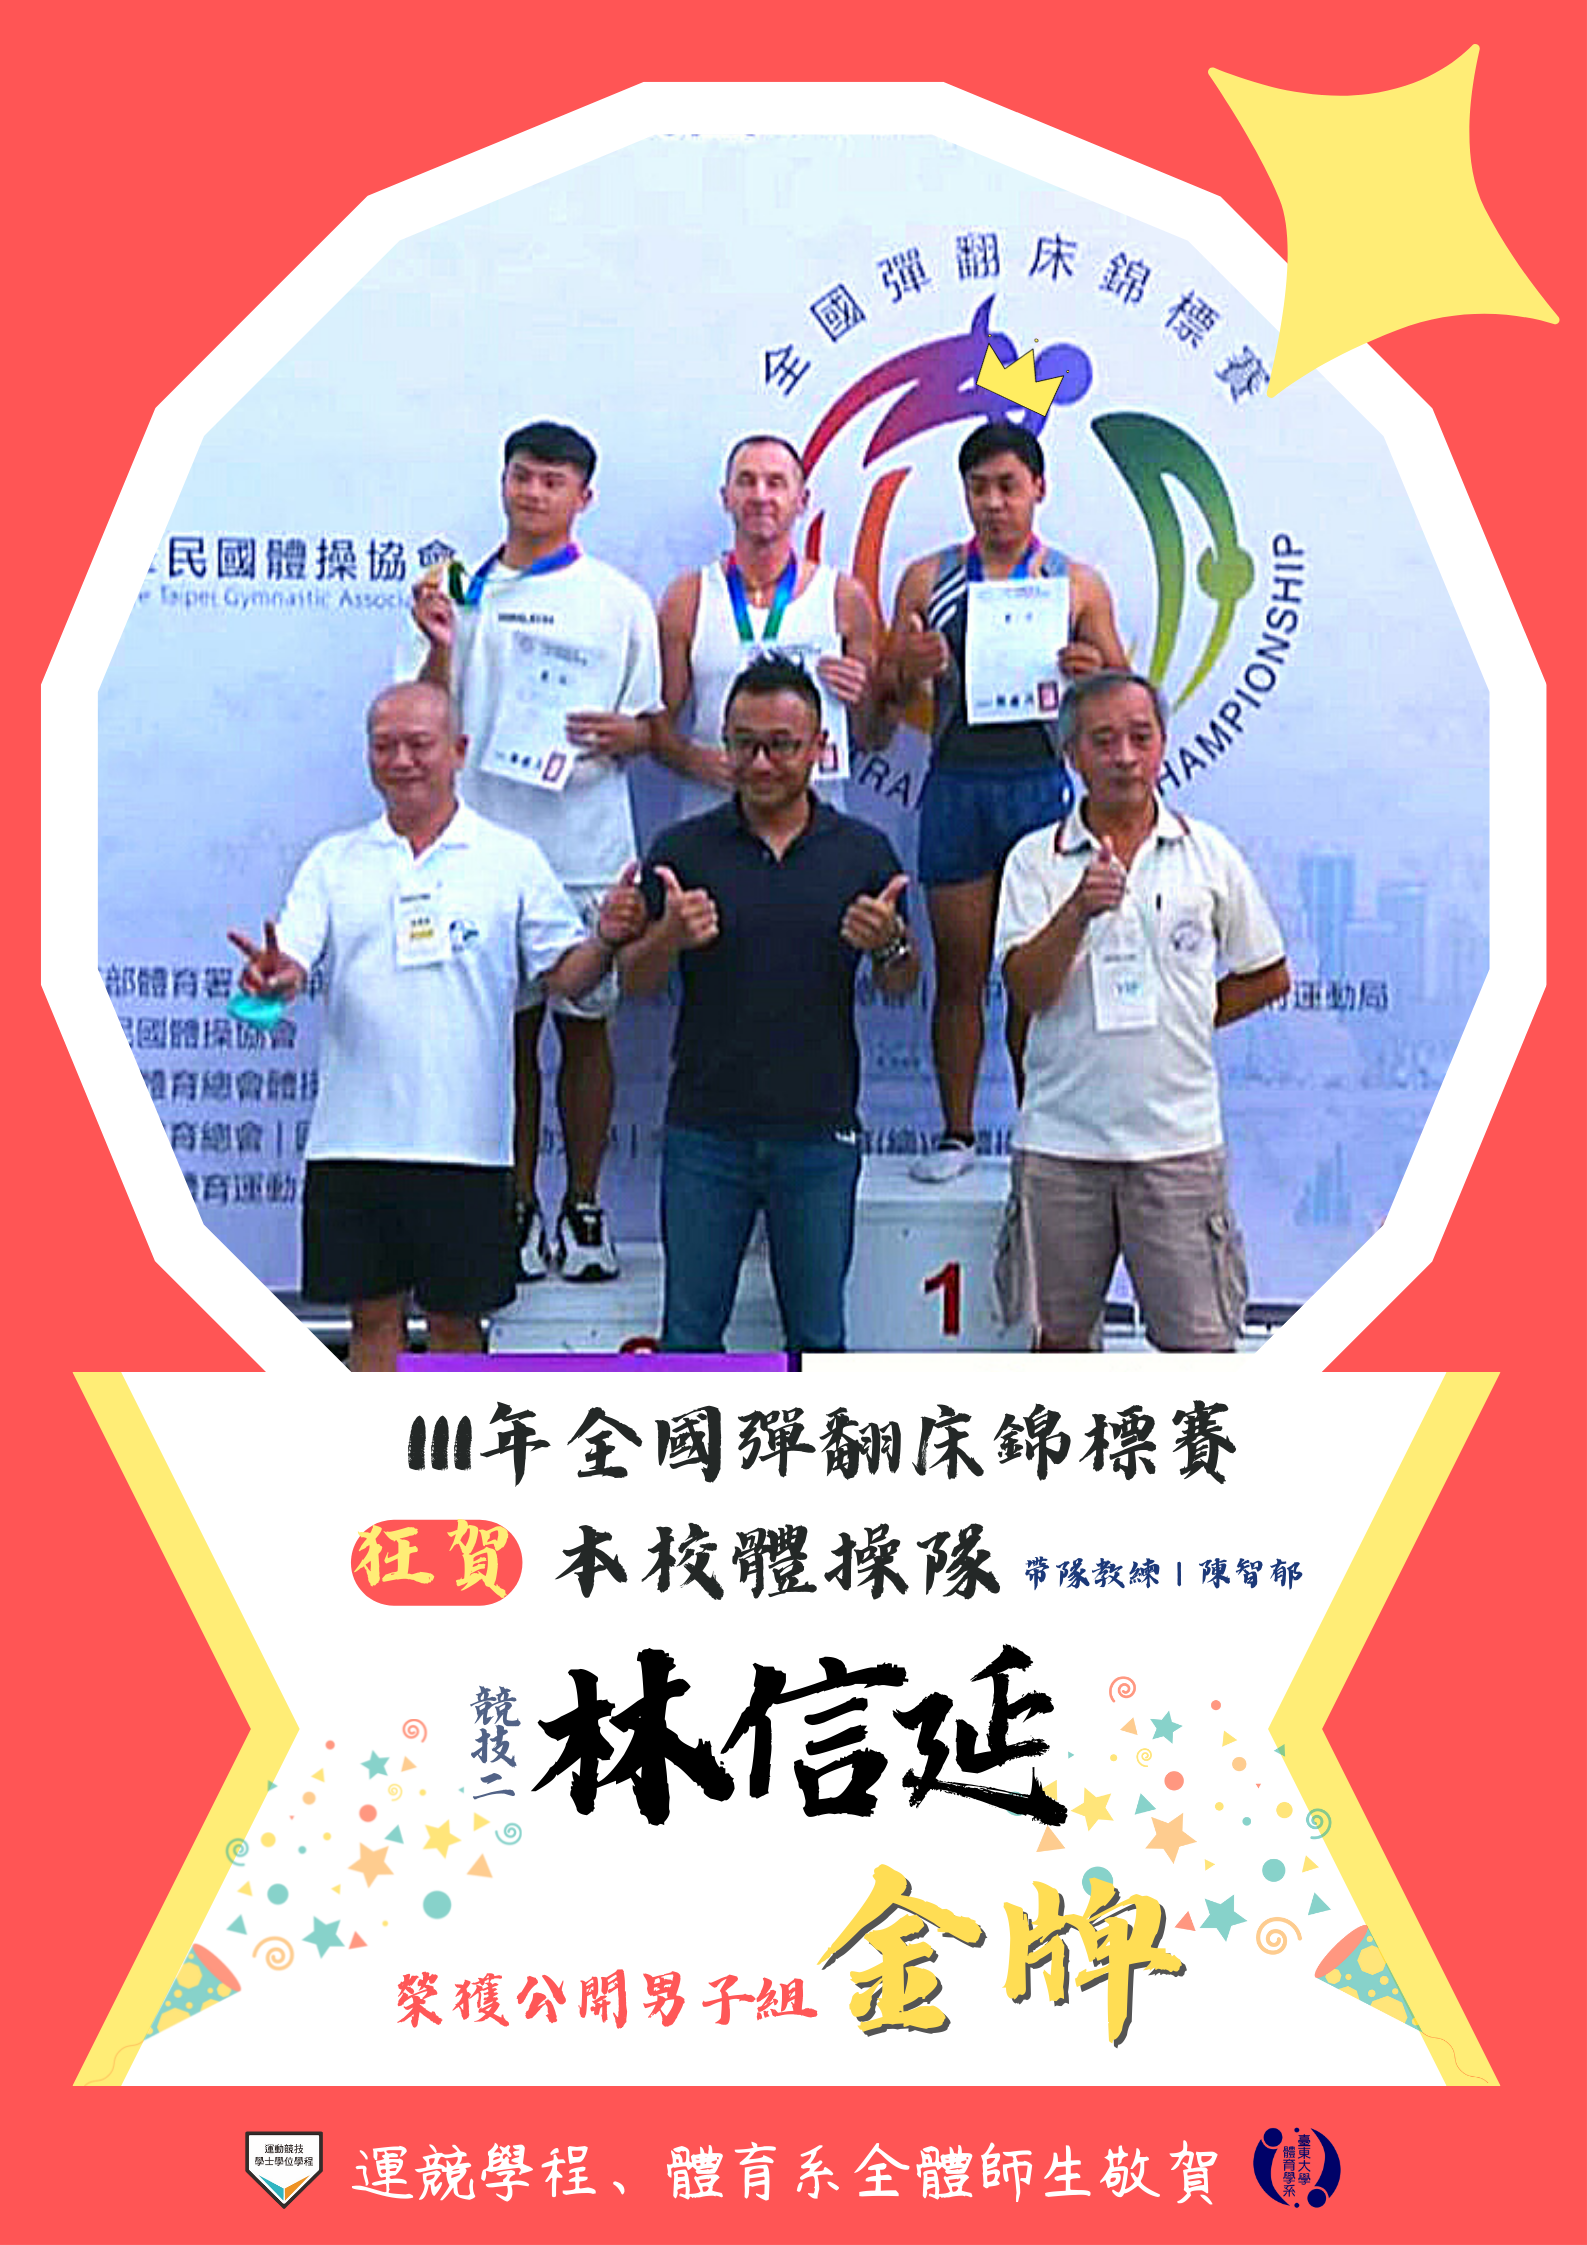 本校體操隊競技二林信延參加111年全國彈翻床錦標賽榮獲公開男子組金牌